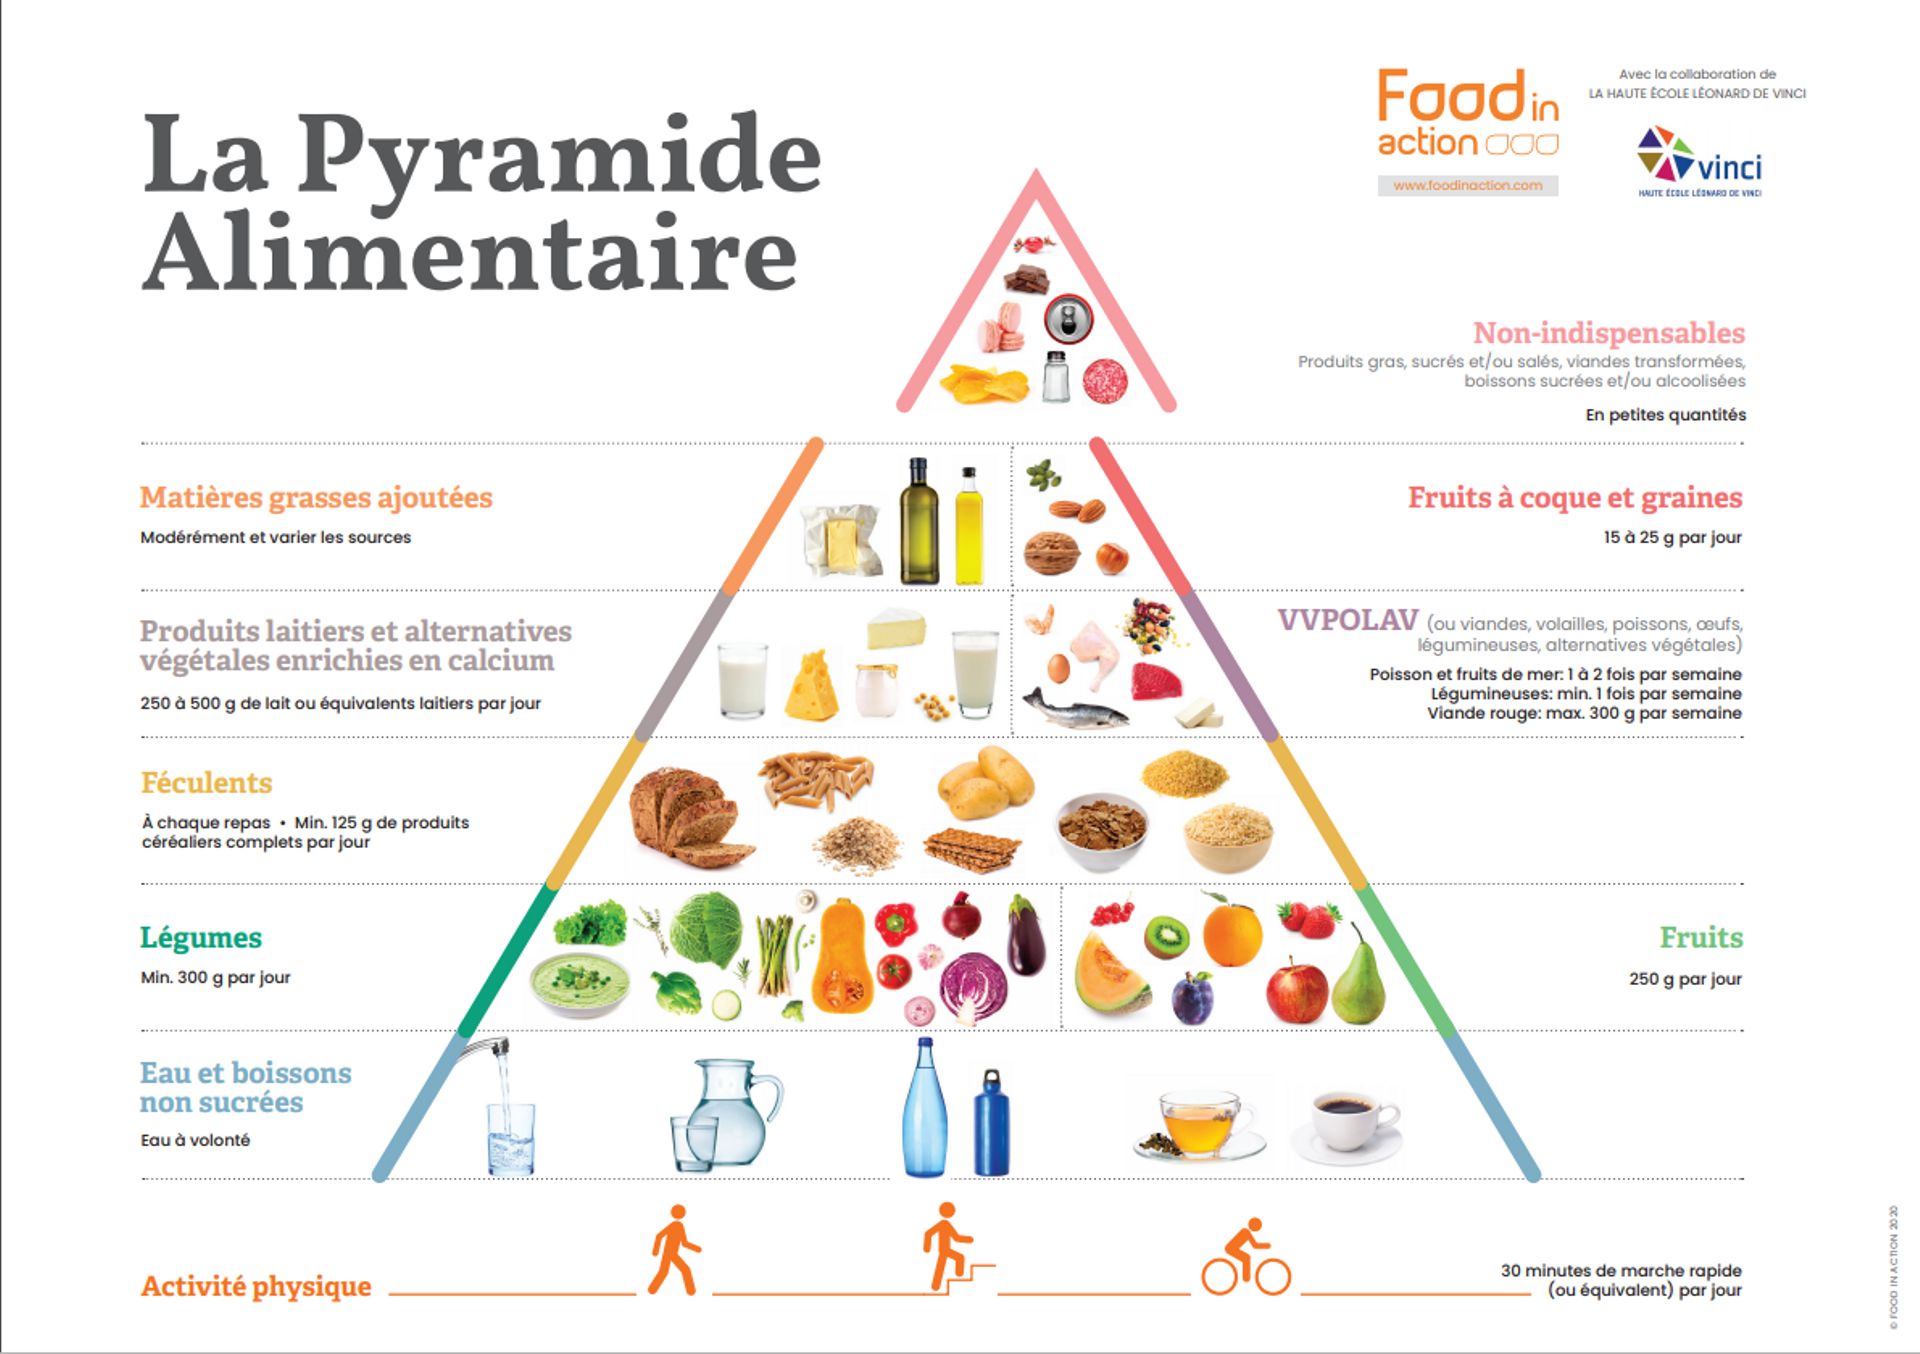 La Pyramide Alimentaire 2020, développée par Food in Action et le département diététique de l’Institut Paul Lambin – Haute École Léonard de Vinci